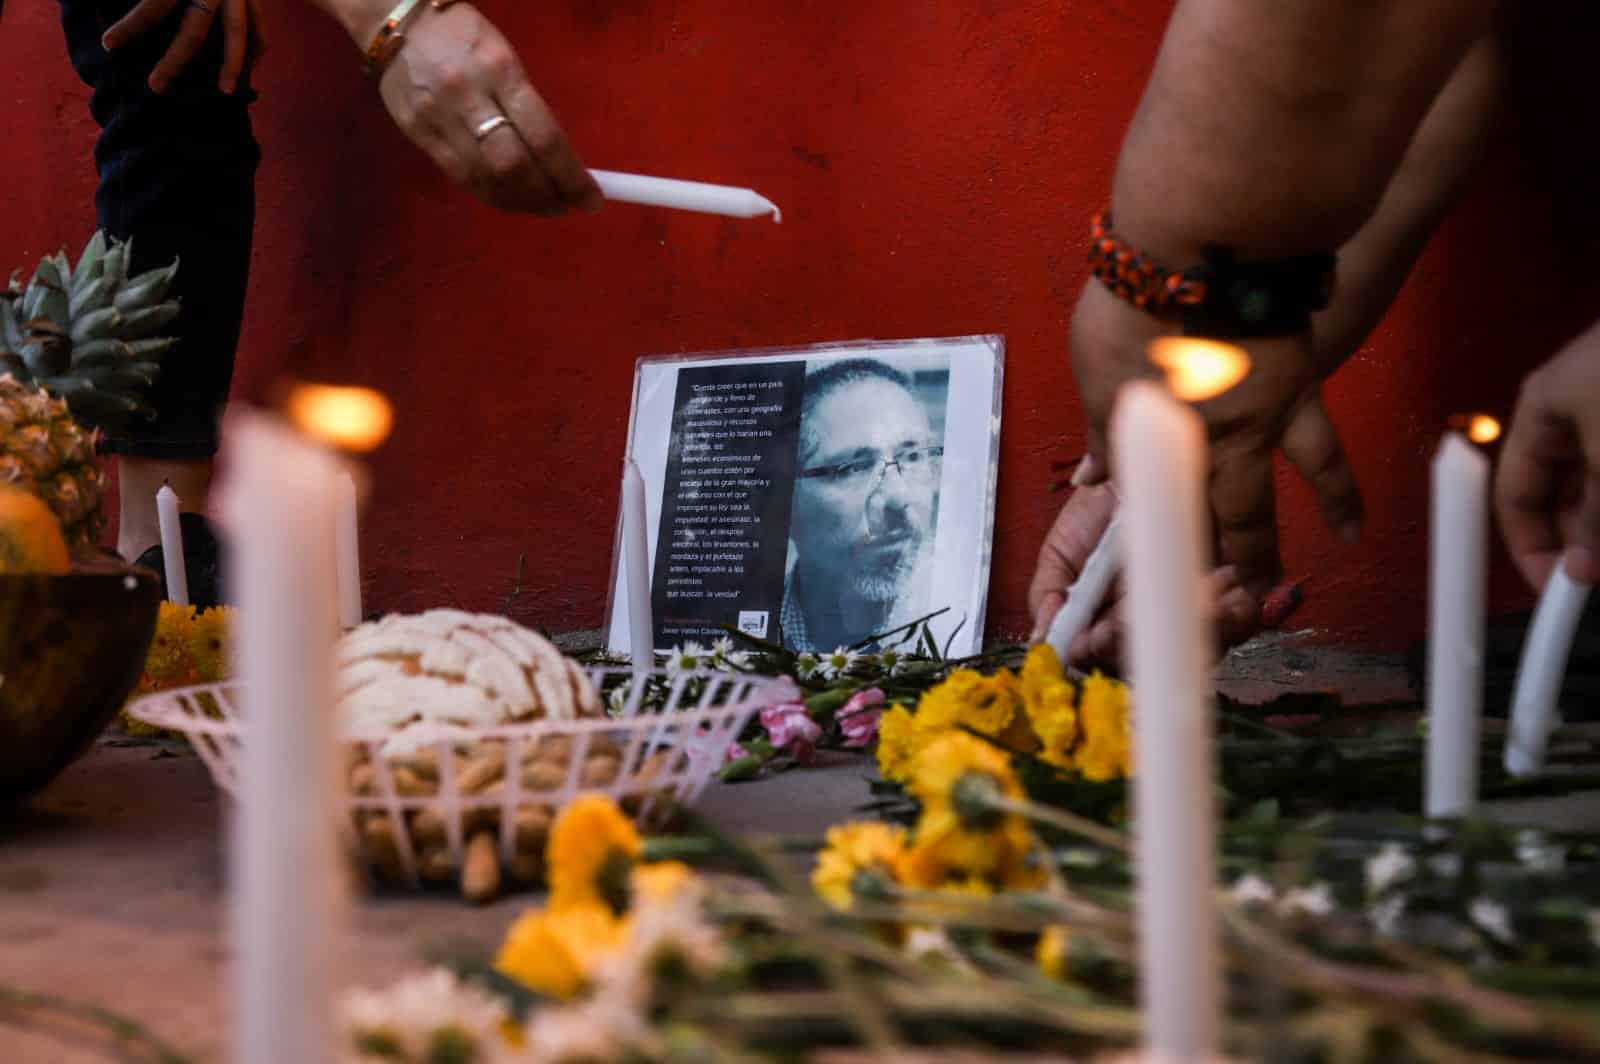 “Malayerba nunca muere” tapizan Culiacán a seis años del crimen de Javier Valdez